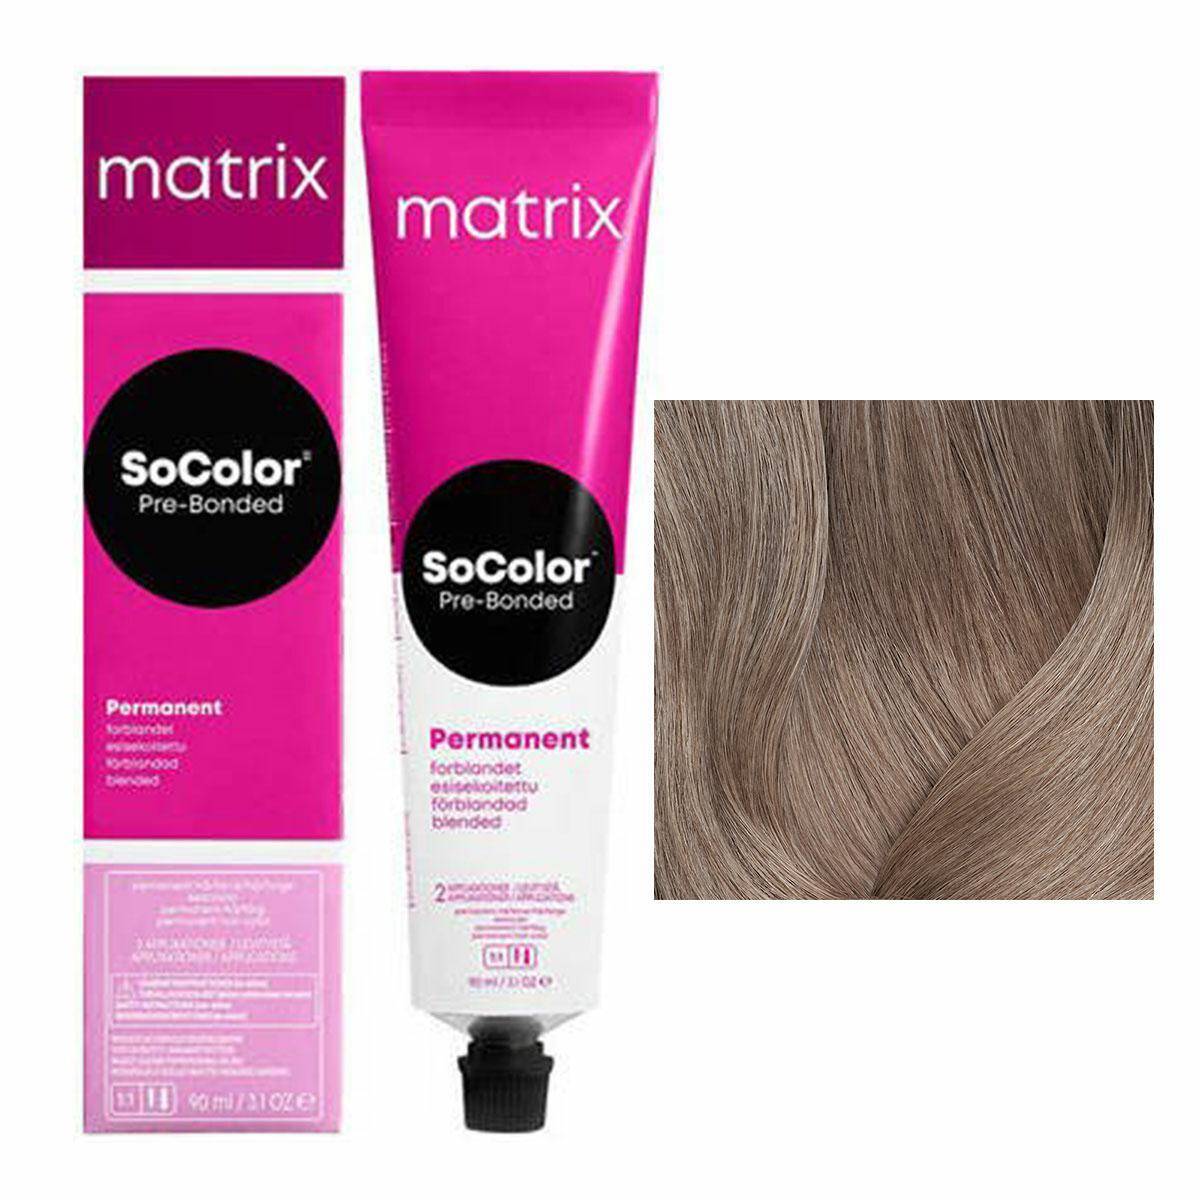 Matrix SoColor Pre-Bonded Farba do włosów - 8N Naturalny jasny blond, trwała koloryzacja 90ml